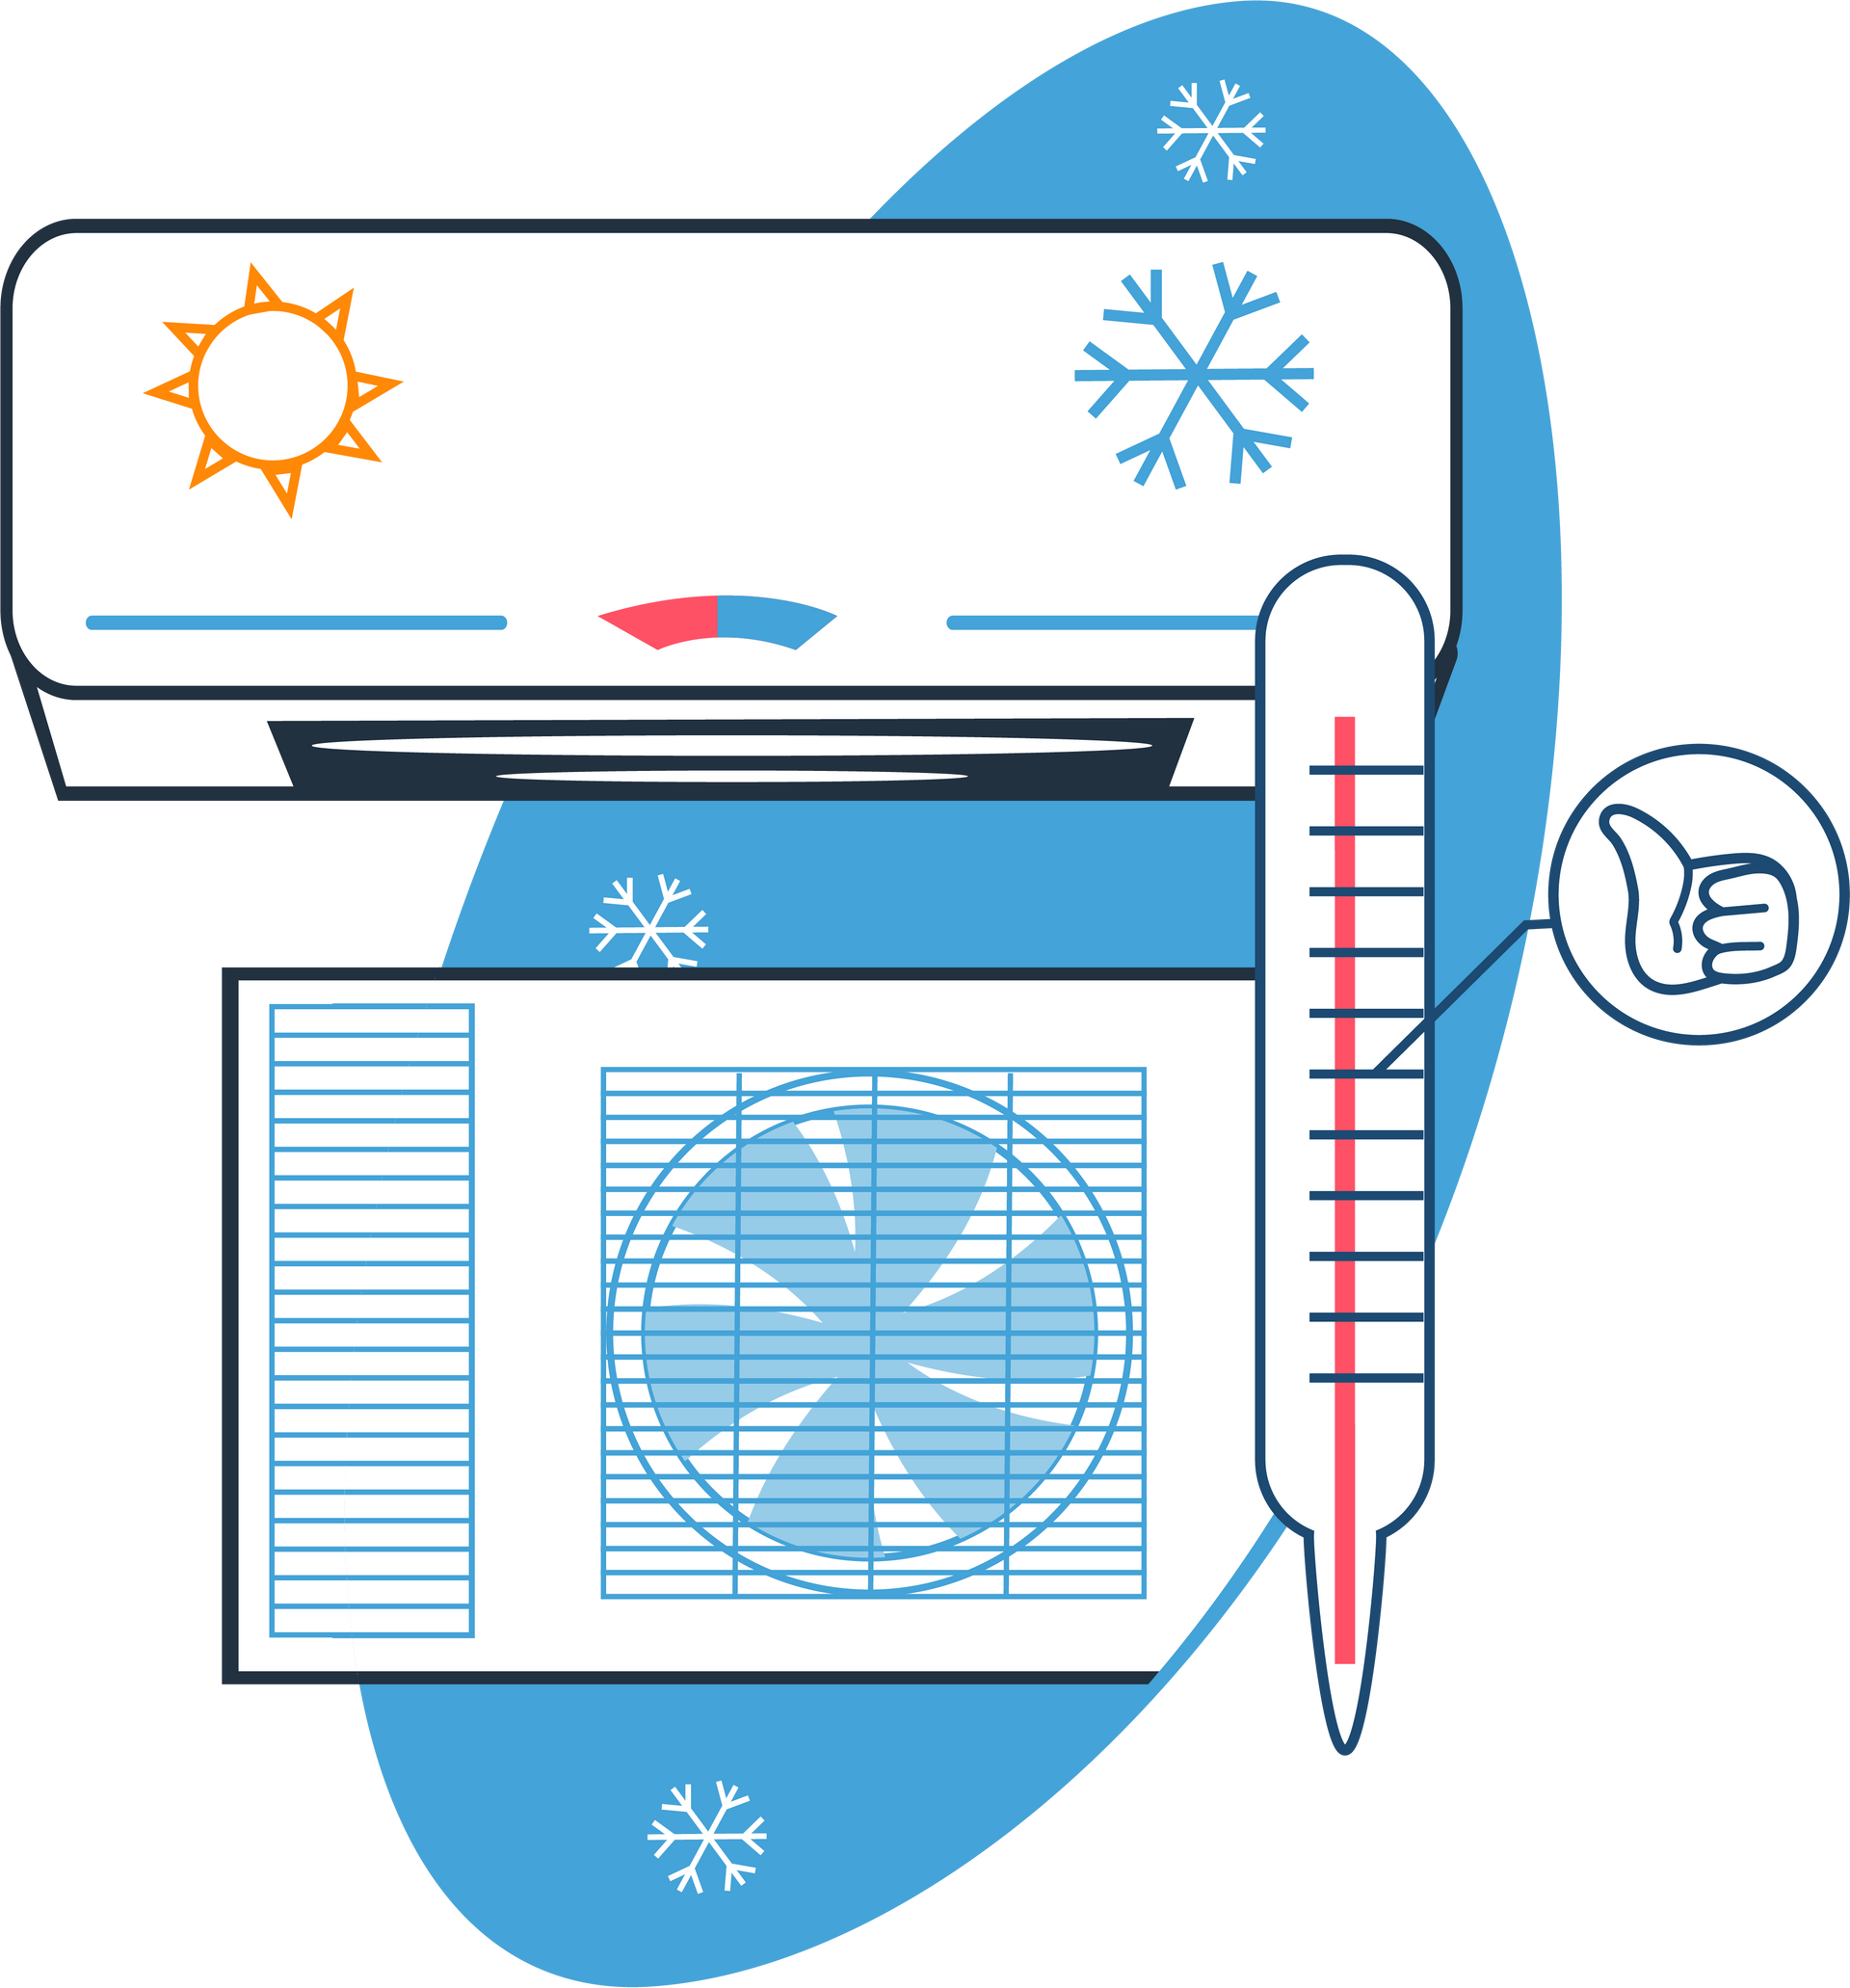 Systèmes de chauffage et climatisation en dessin - Page À propos